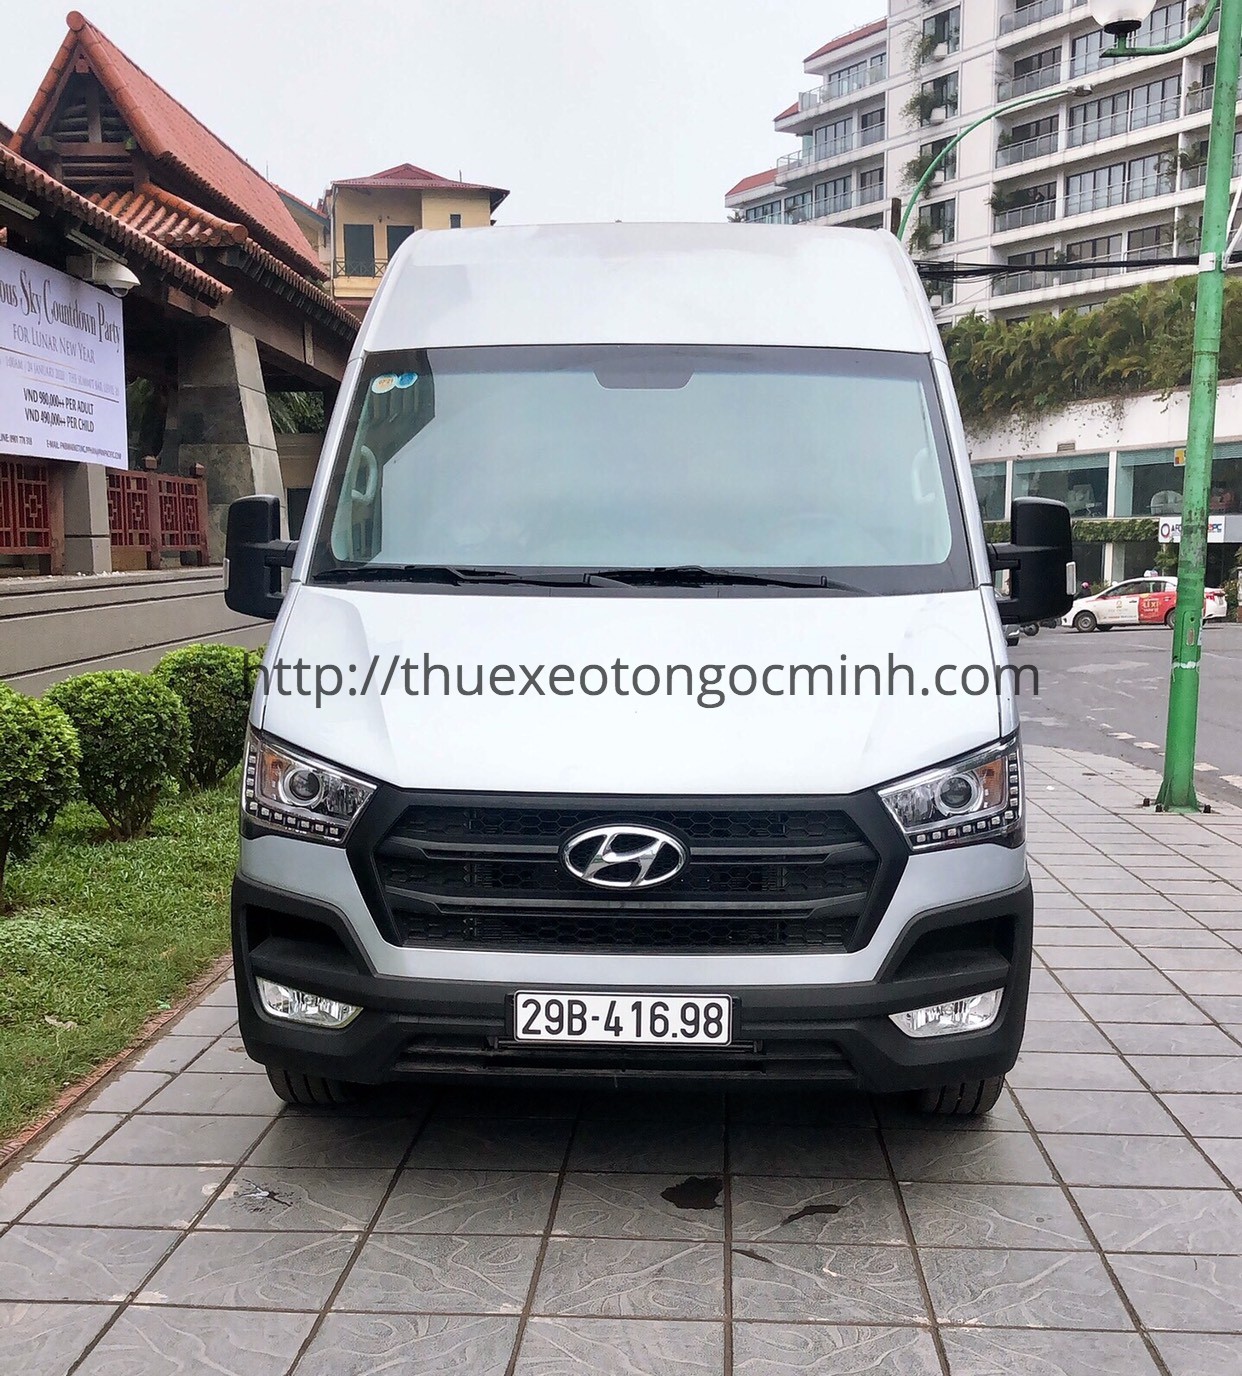 Cho thuê xe Hyundai Solati 16 chỗ giá rẻ nhất Hà Nội